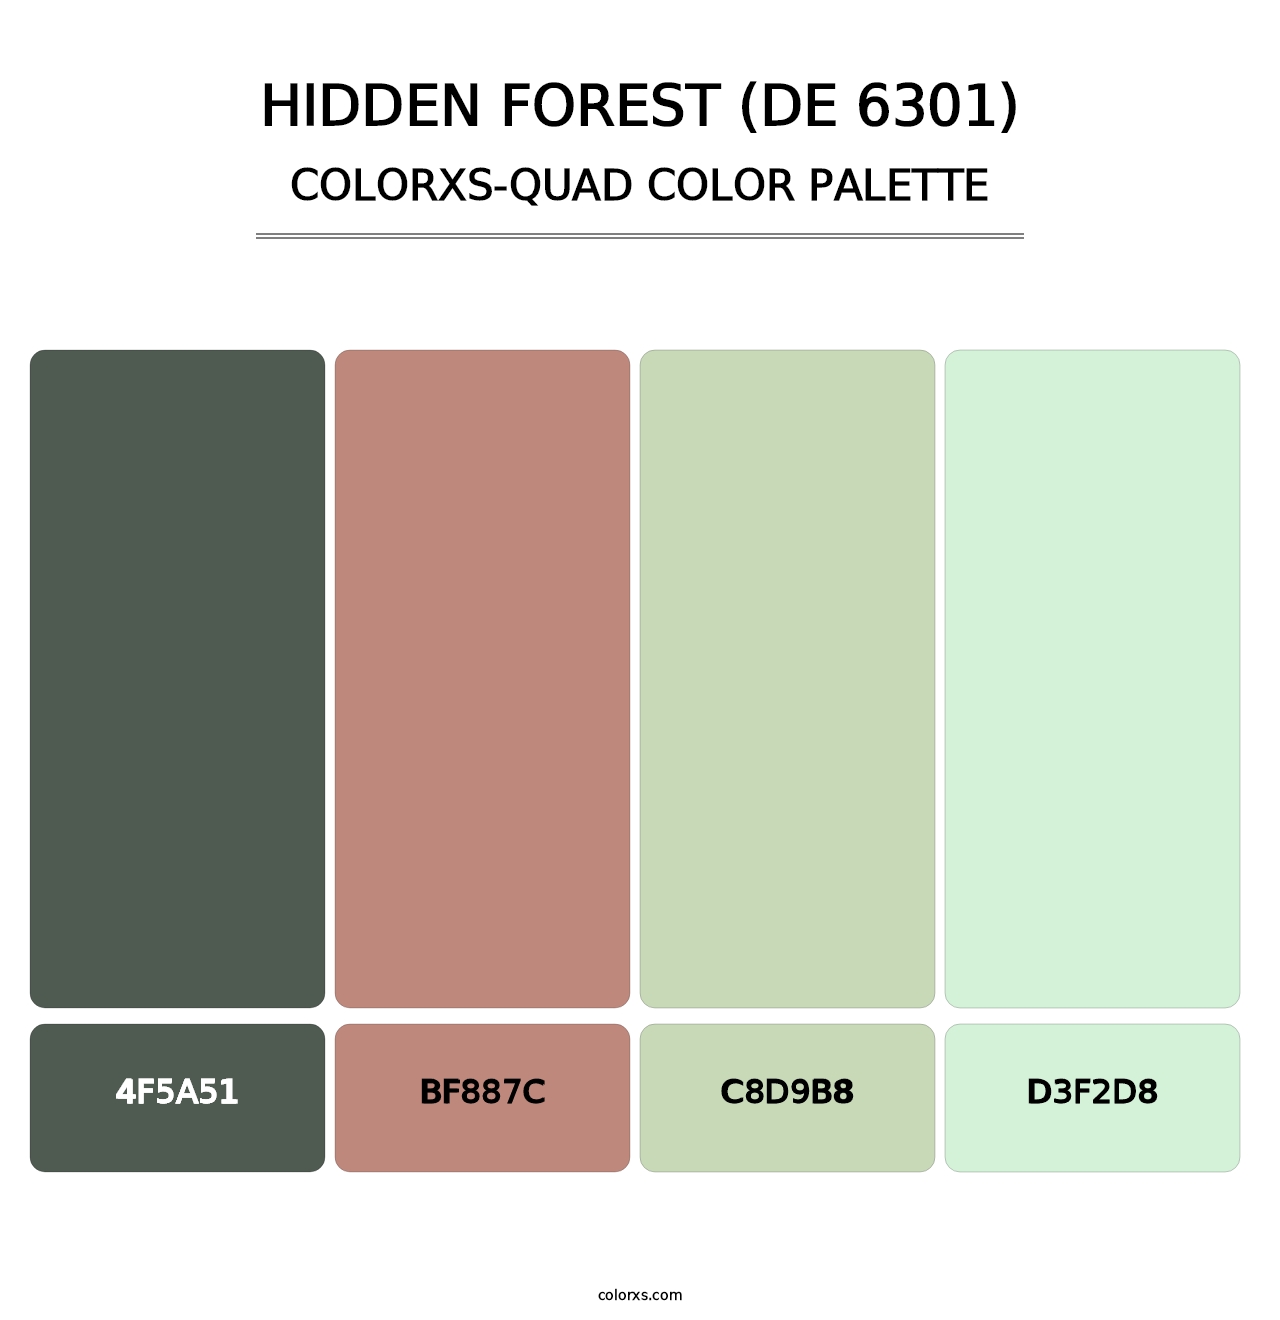 Hidden Forest (DE 6301) - Colorxs Quad Palette